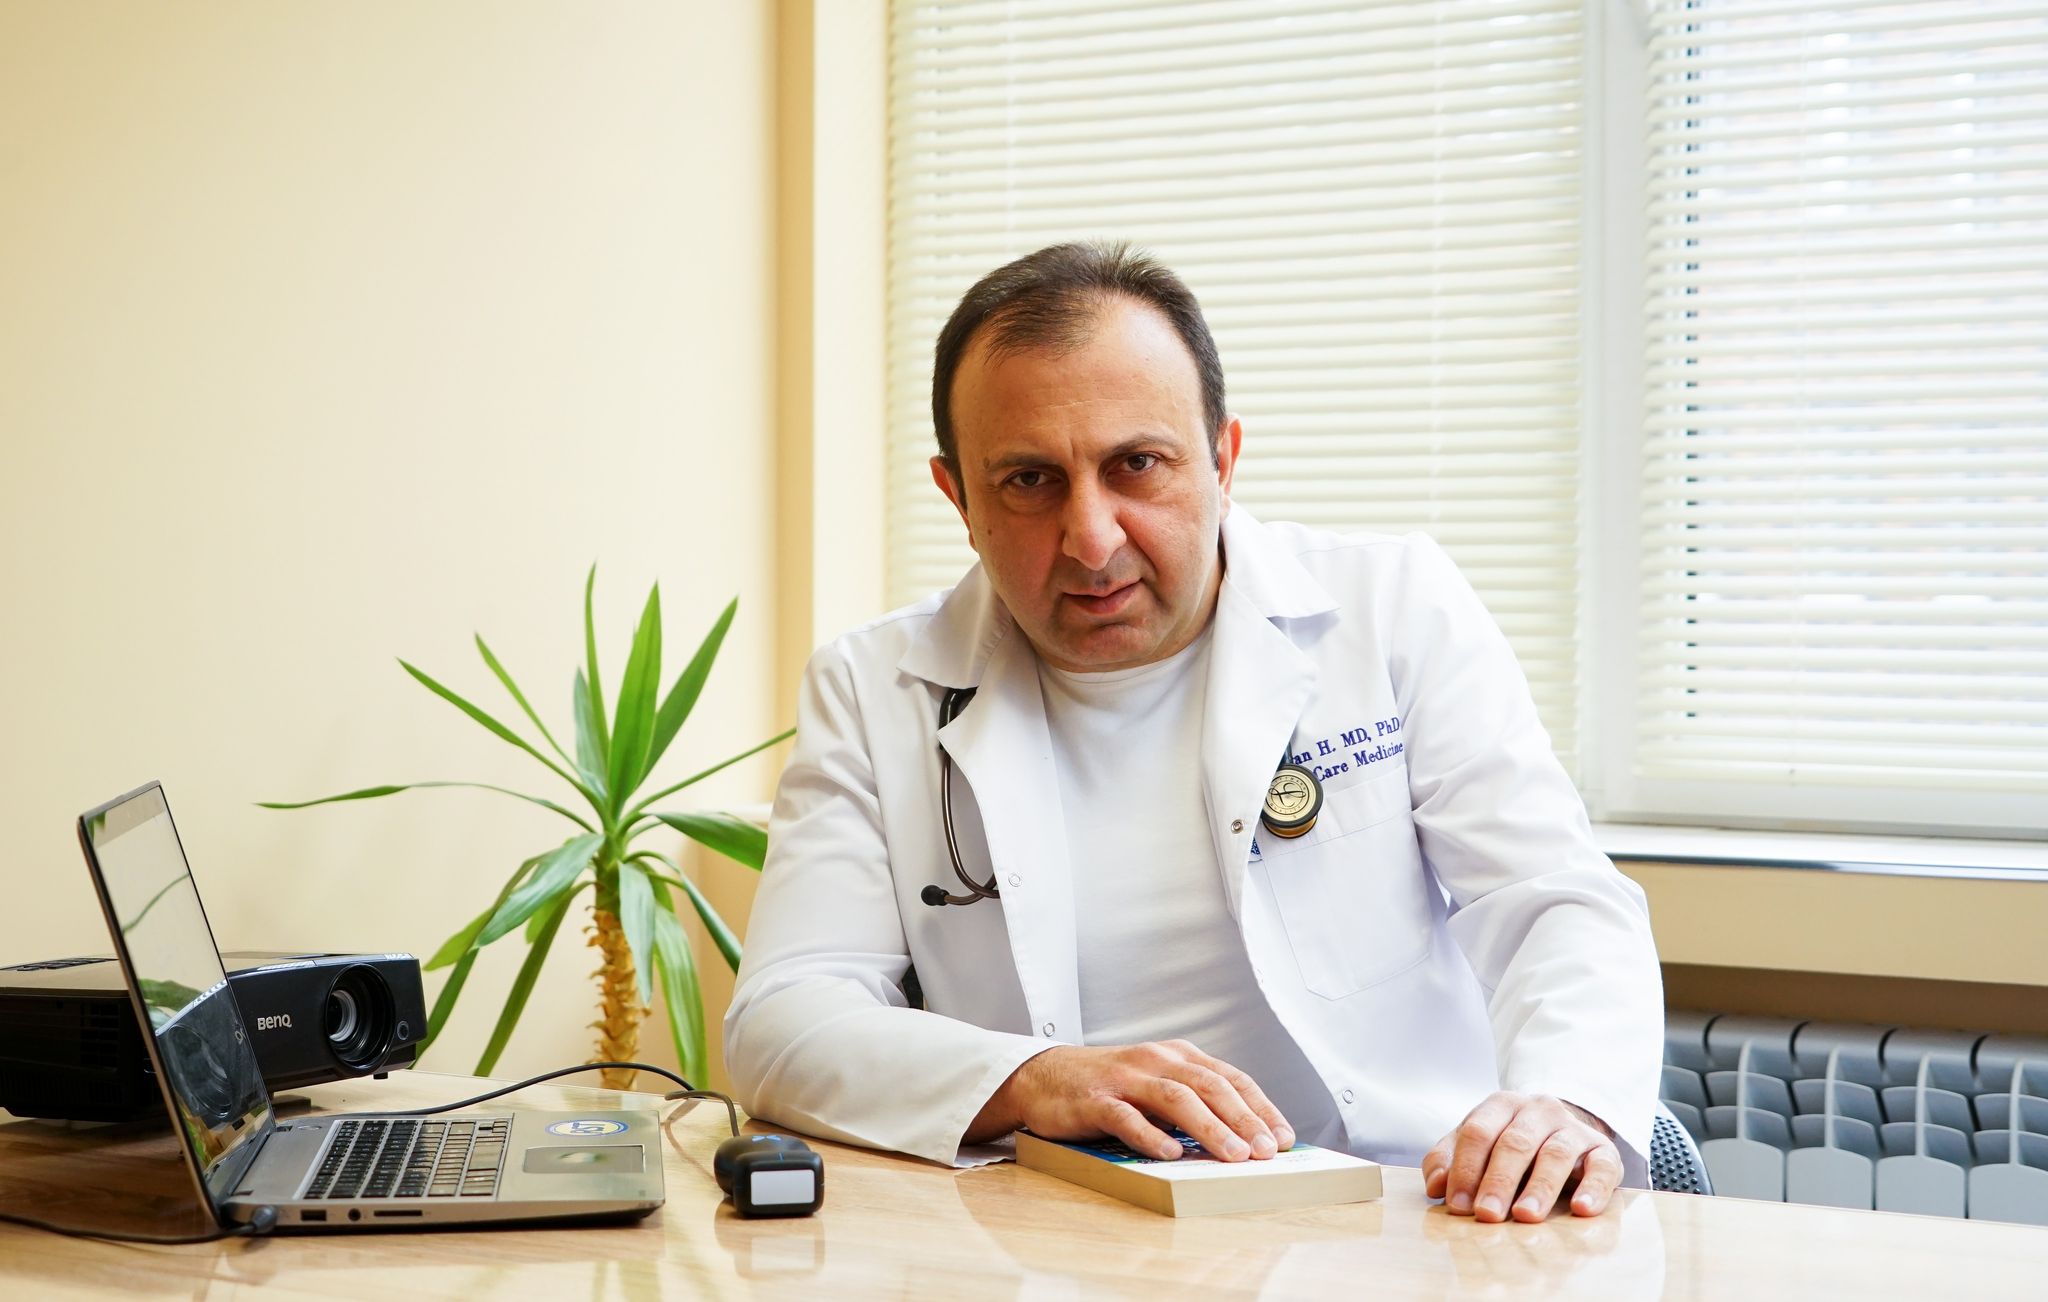 Հարություն Մանգոյան. Հայաստանի առողջապահության համակարգին հարկավոր են կանոններ, և դրանցով պետք է աշխատել ու զարգանալ